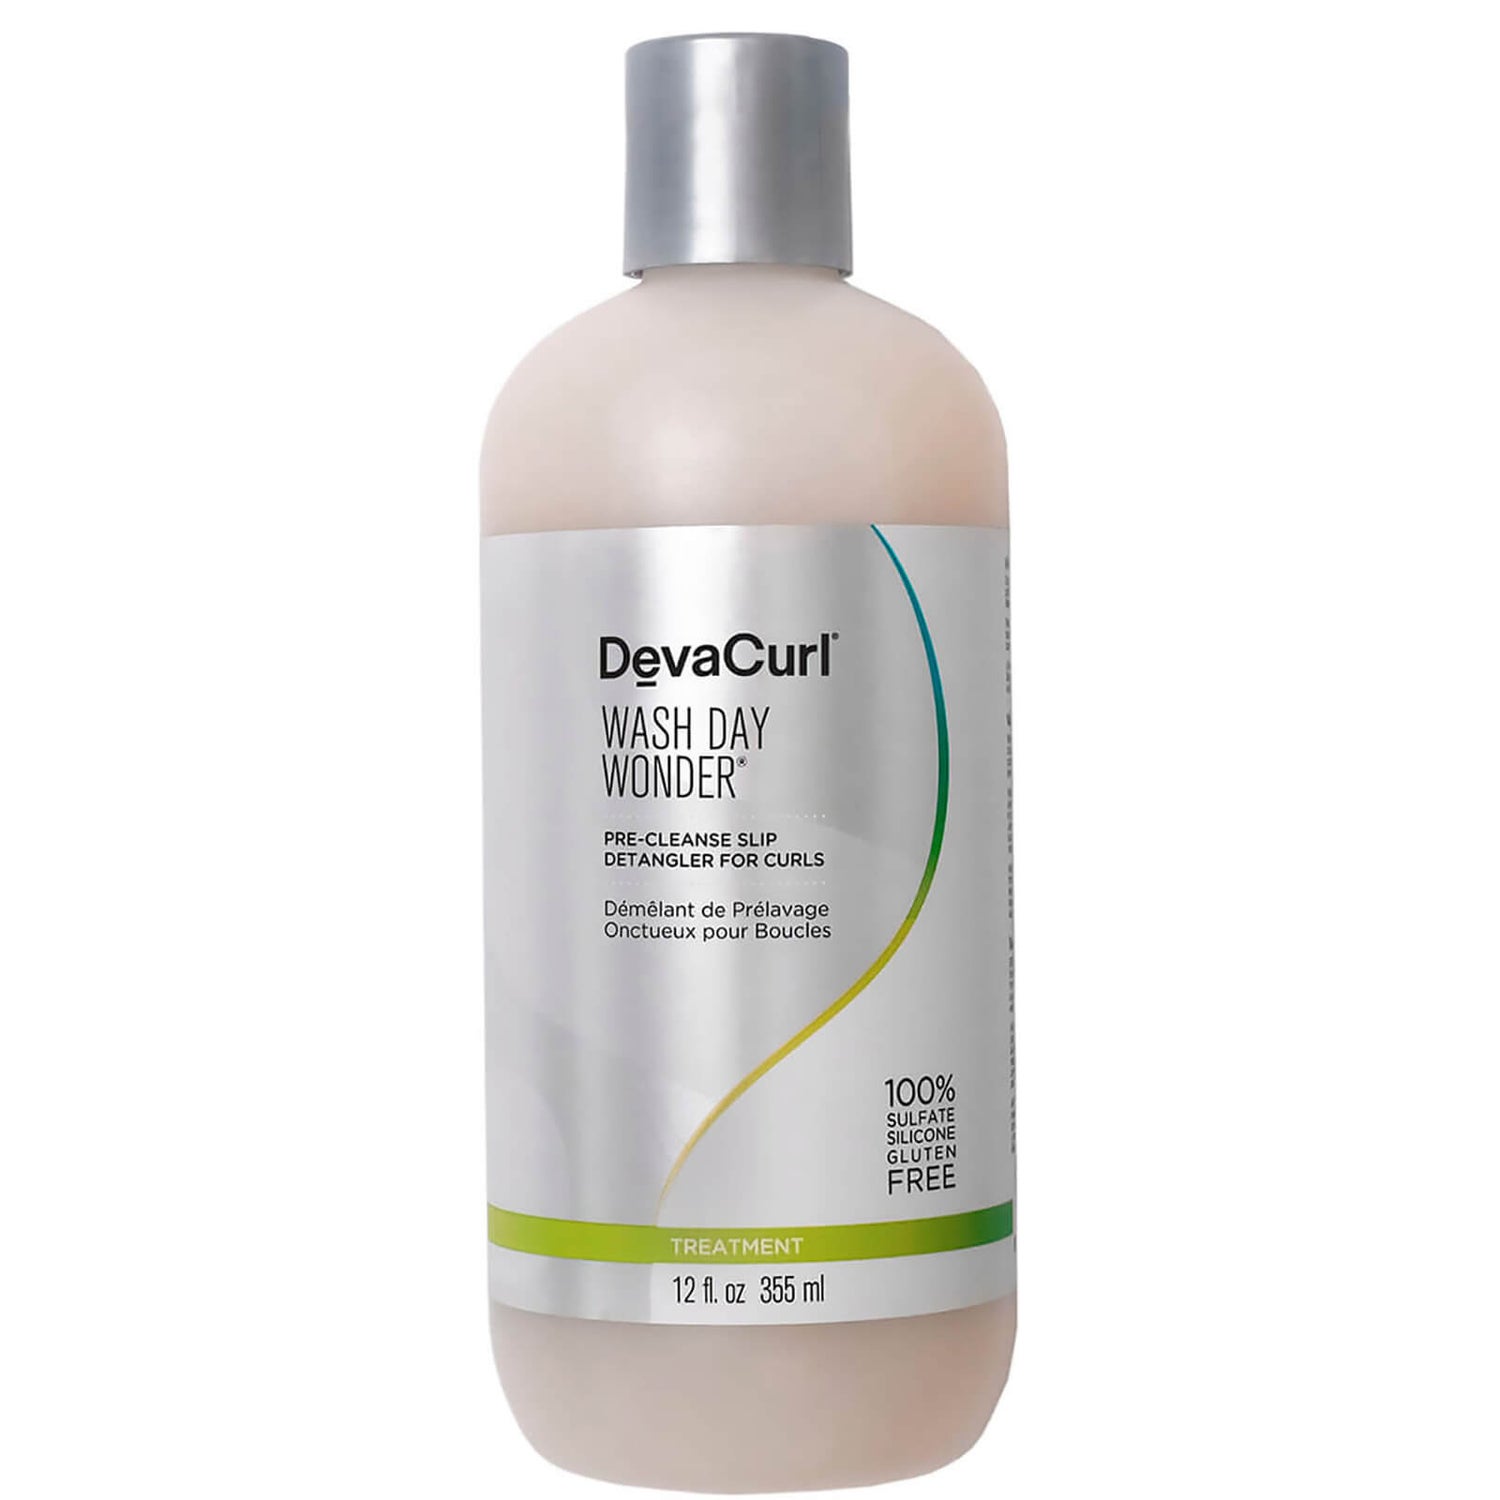 DevaCurl Wash Day Wonder - Pre-Cleanse Slip Detangler for Curls 355ml